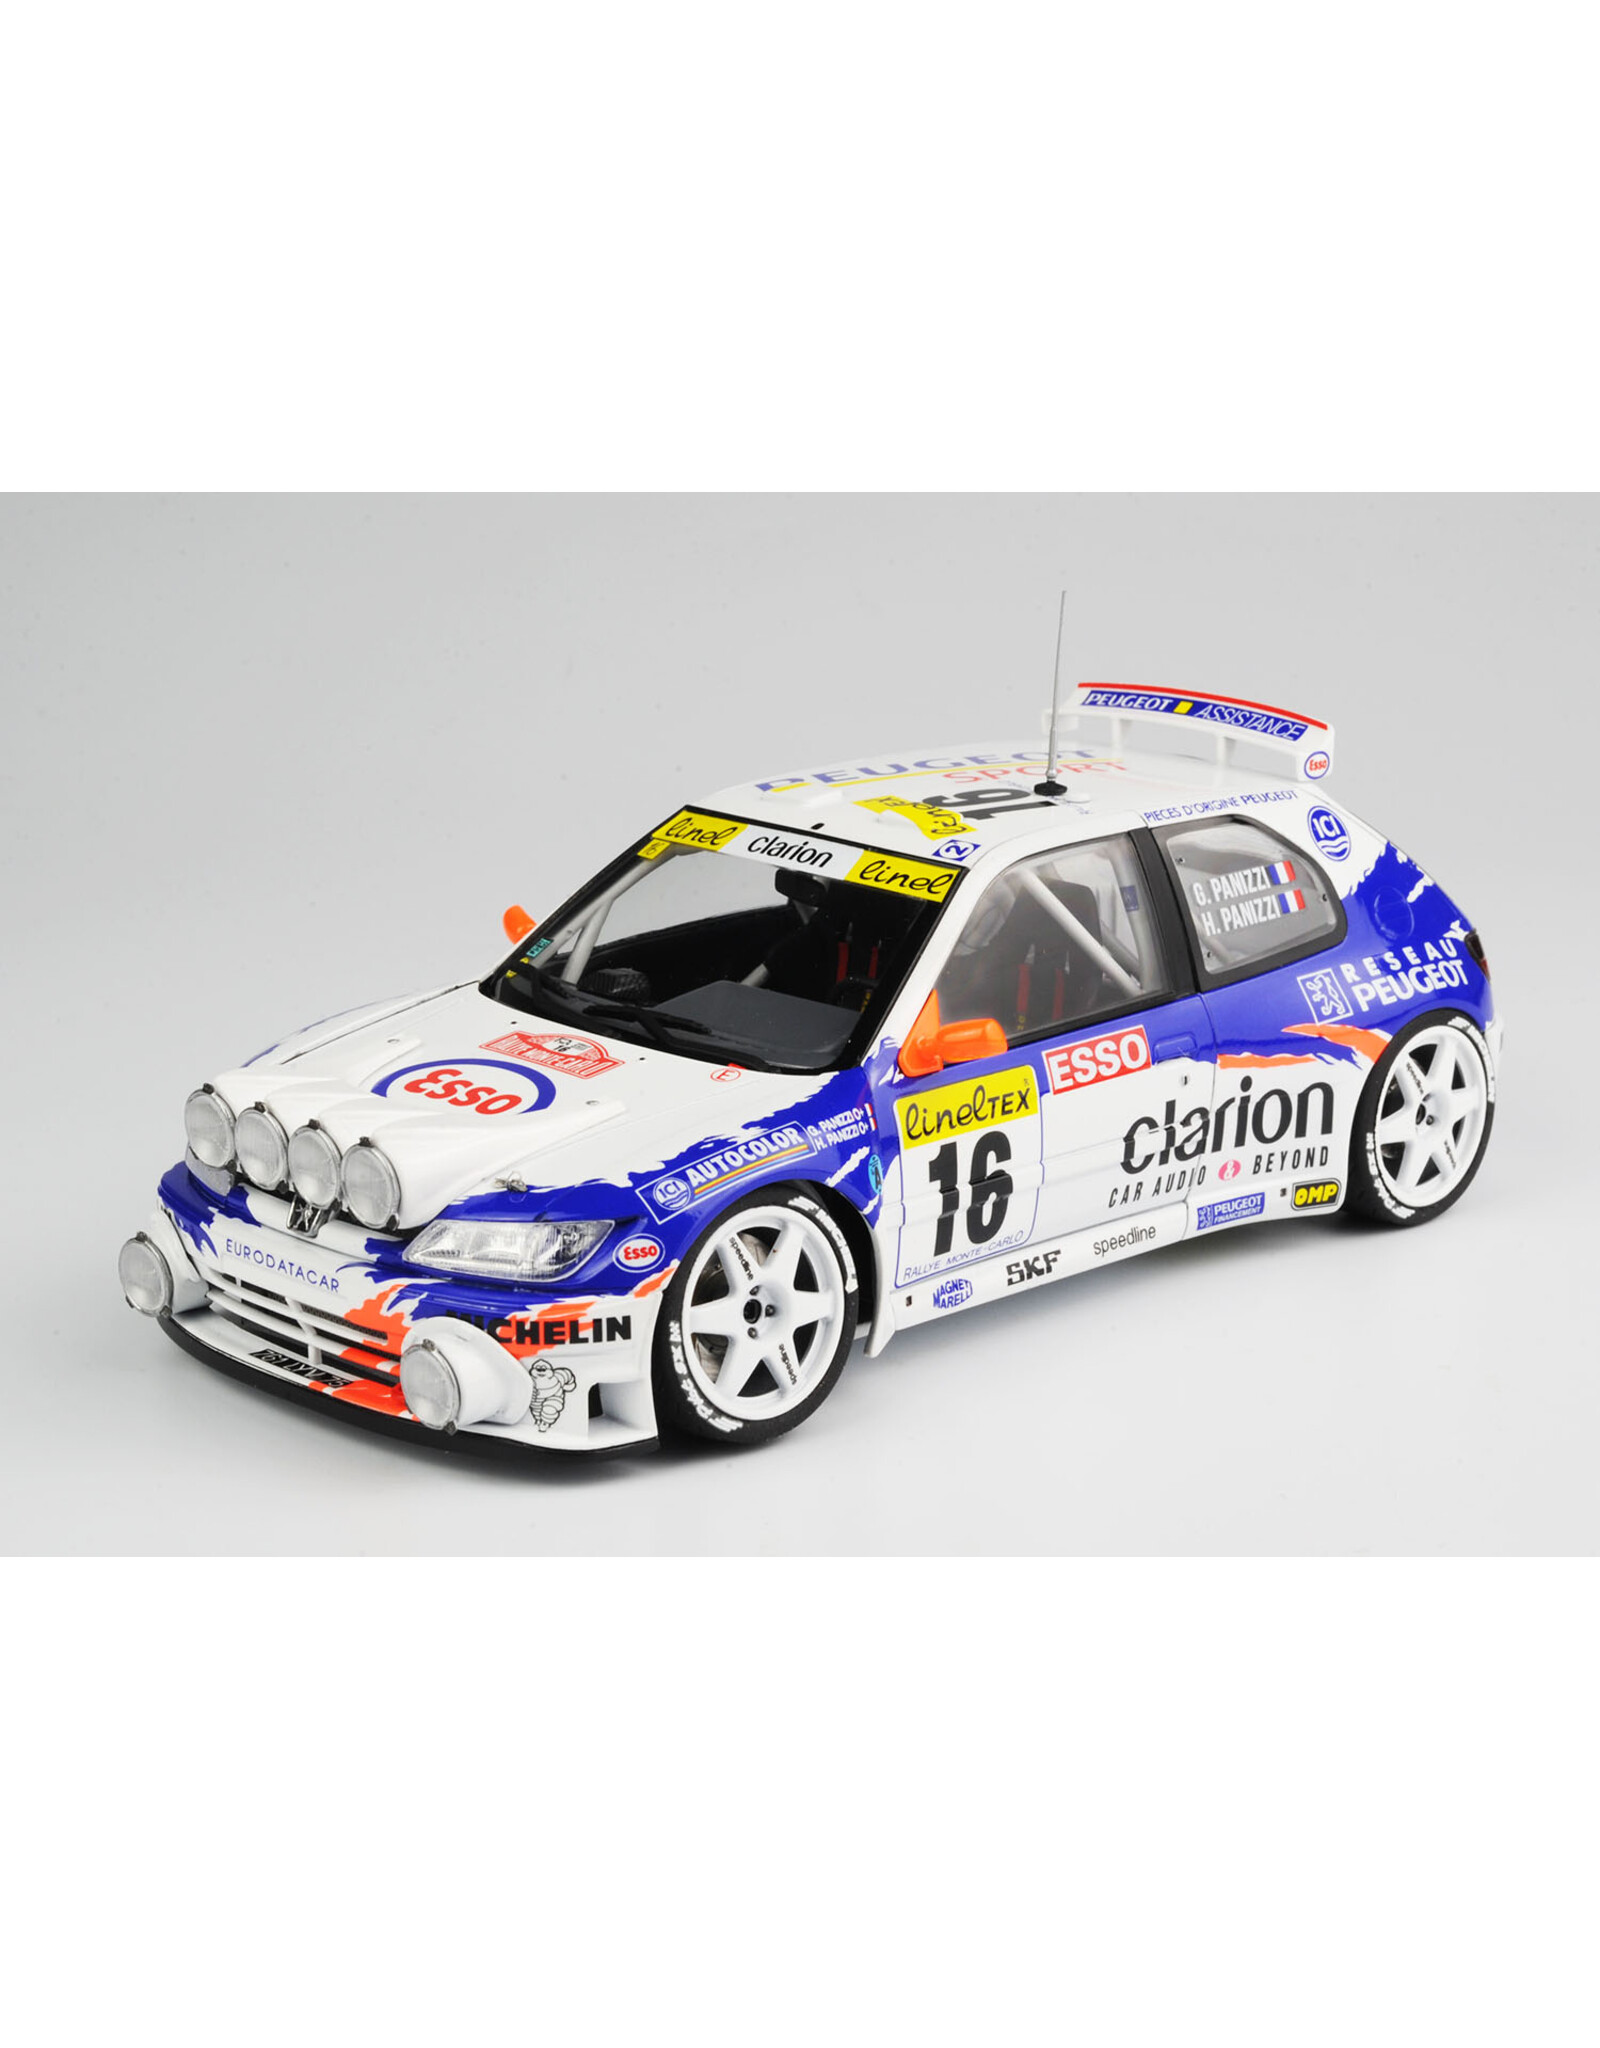 Platz 1/24 Series: Peugeot 306 Maxi Evo2 '98 Monte Carlo Rally Class Win